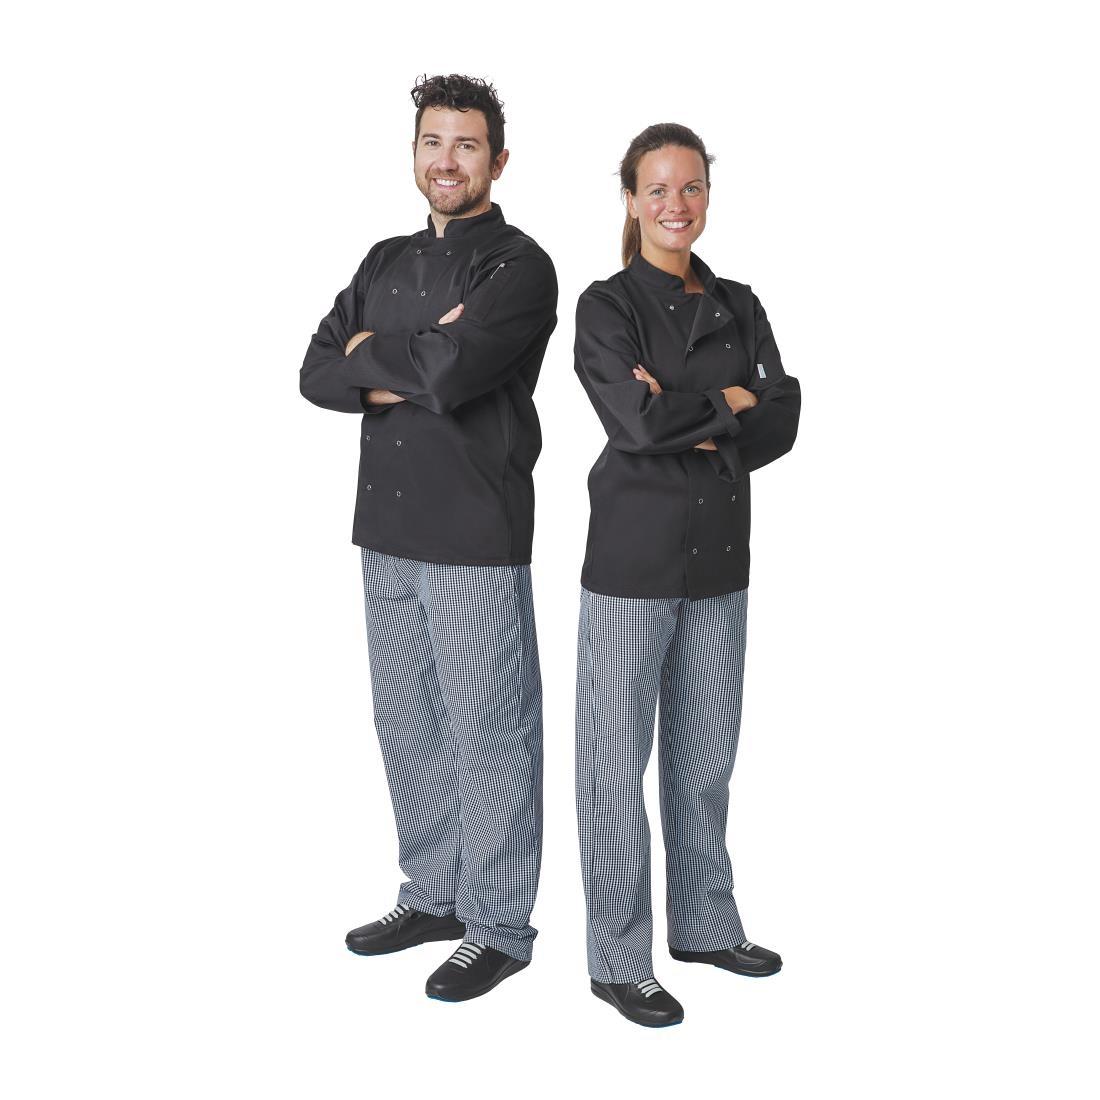 Whites Vegas Unisex Chefs Jacket Long Sleeve Black 5XL - A438-5XL  - 3